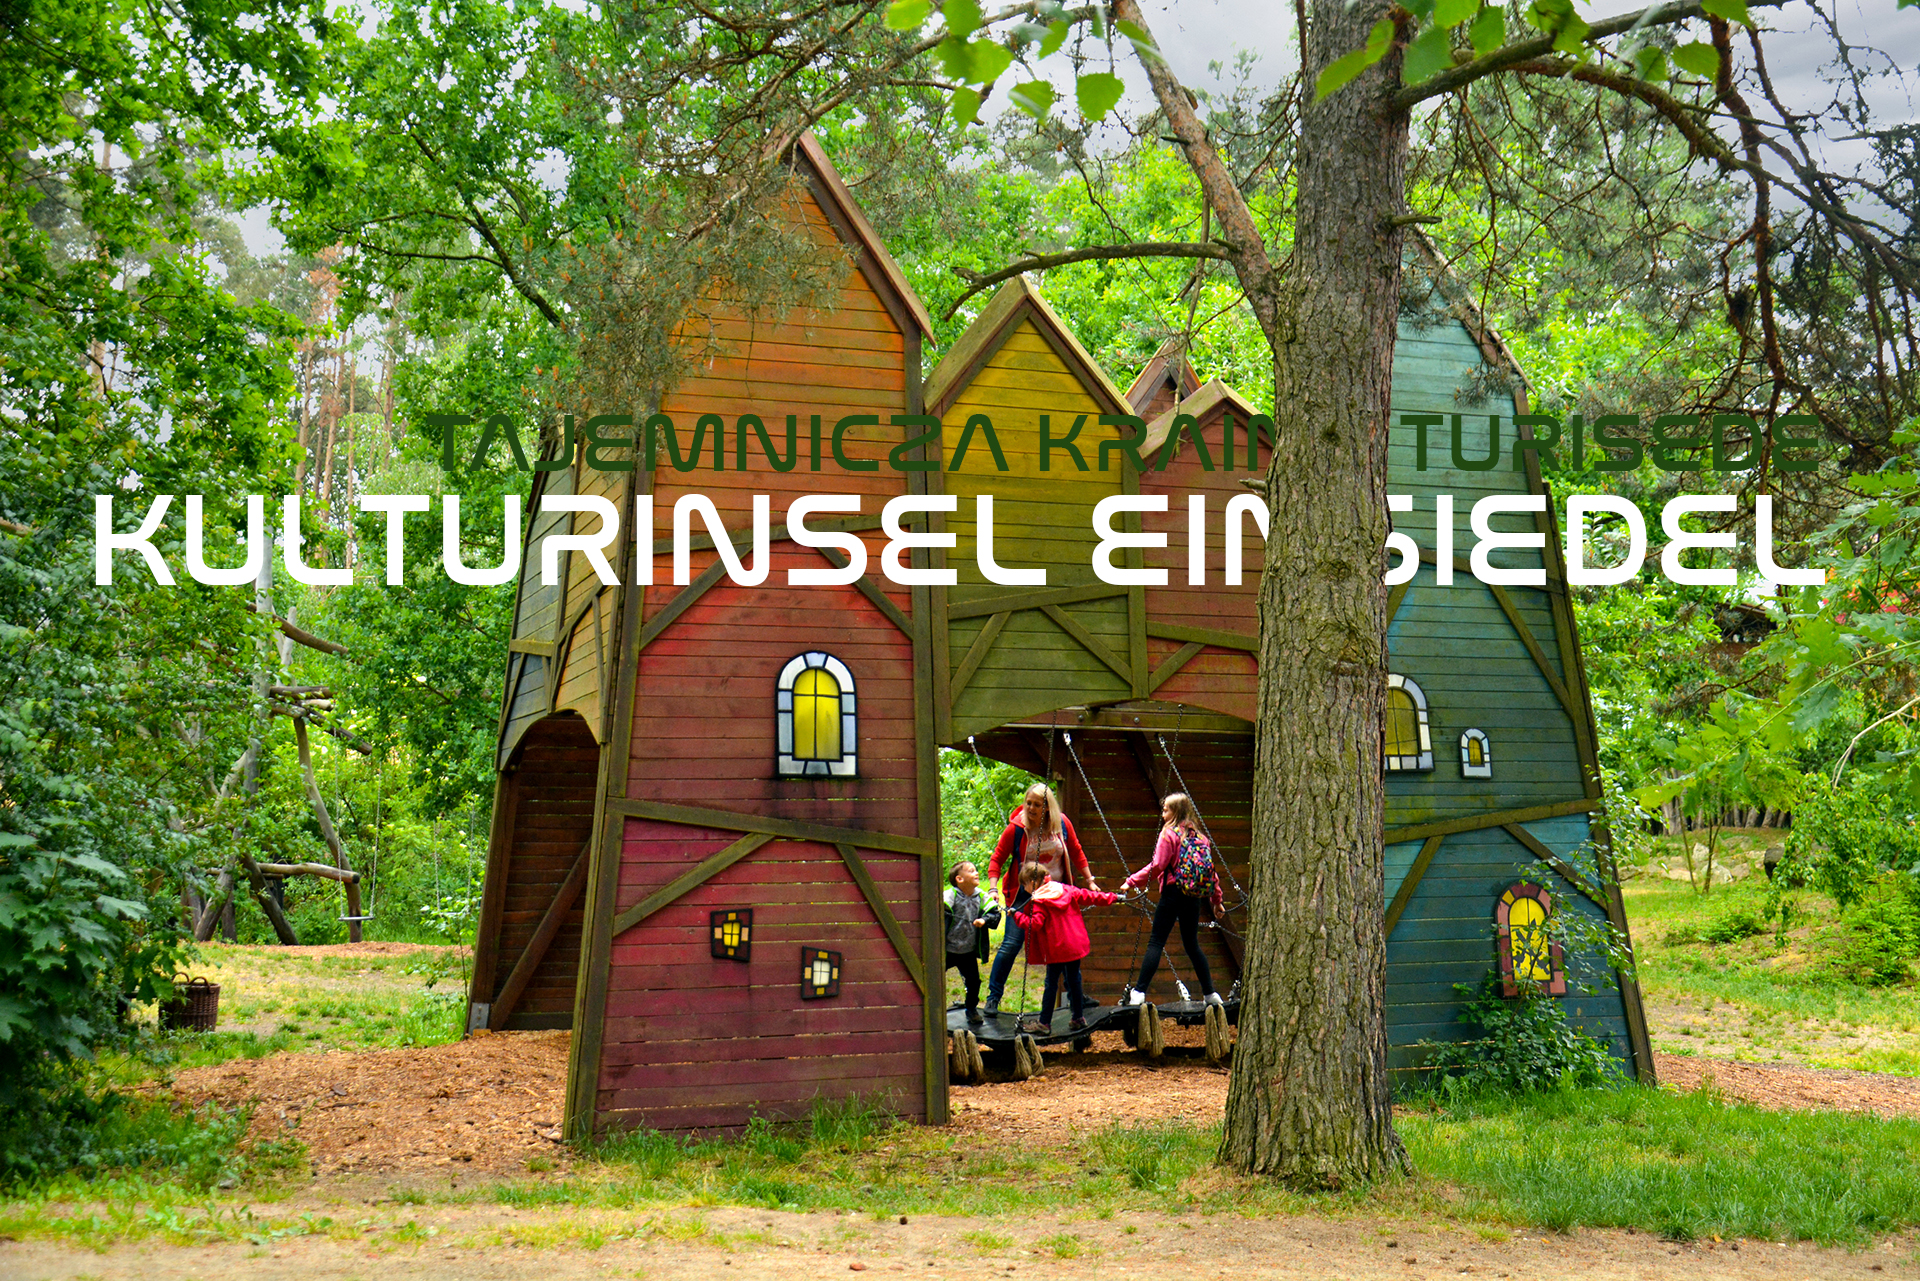 Park przygody Kulturinsel Einsiedel | Tajemnicza Kraina Turisede